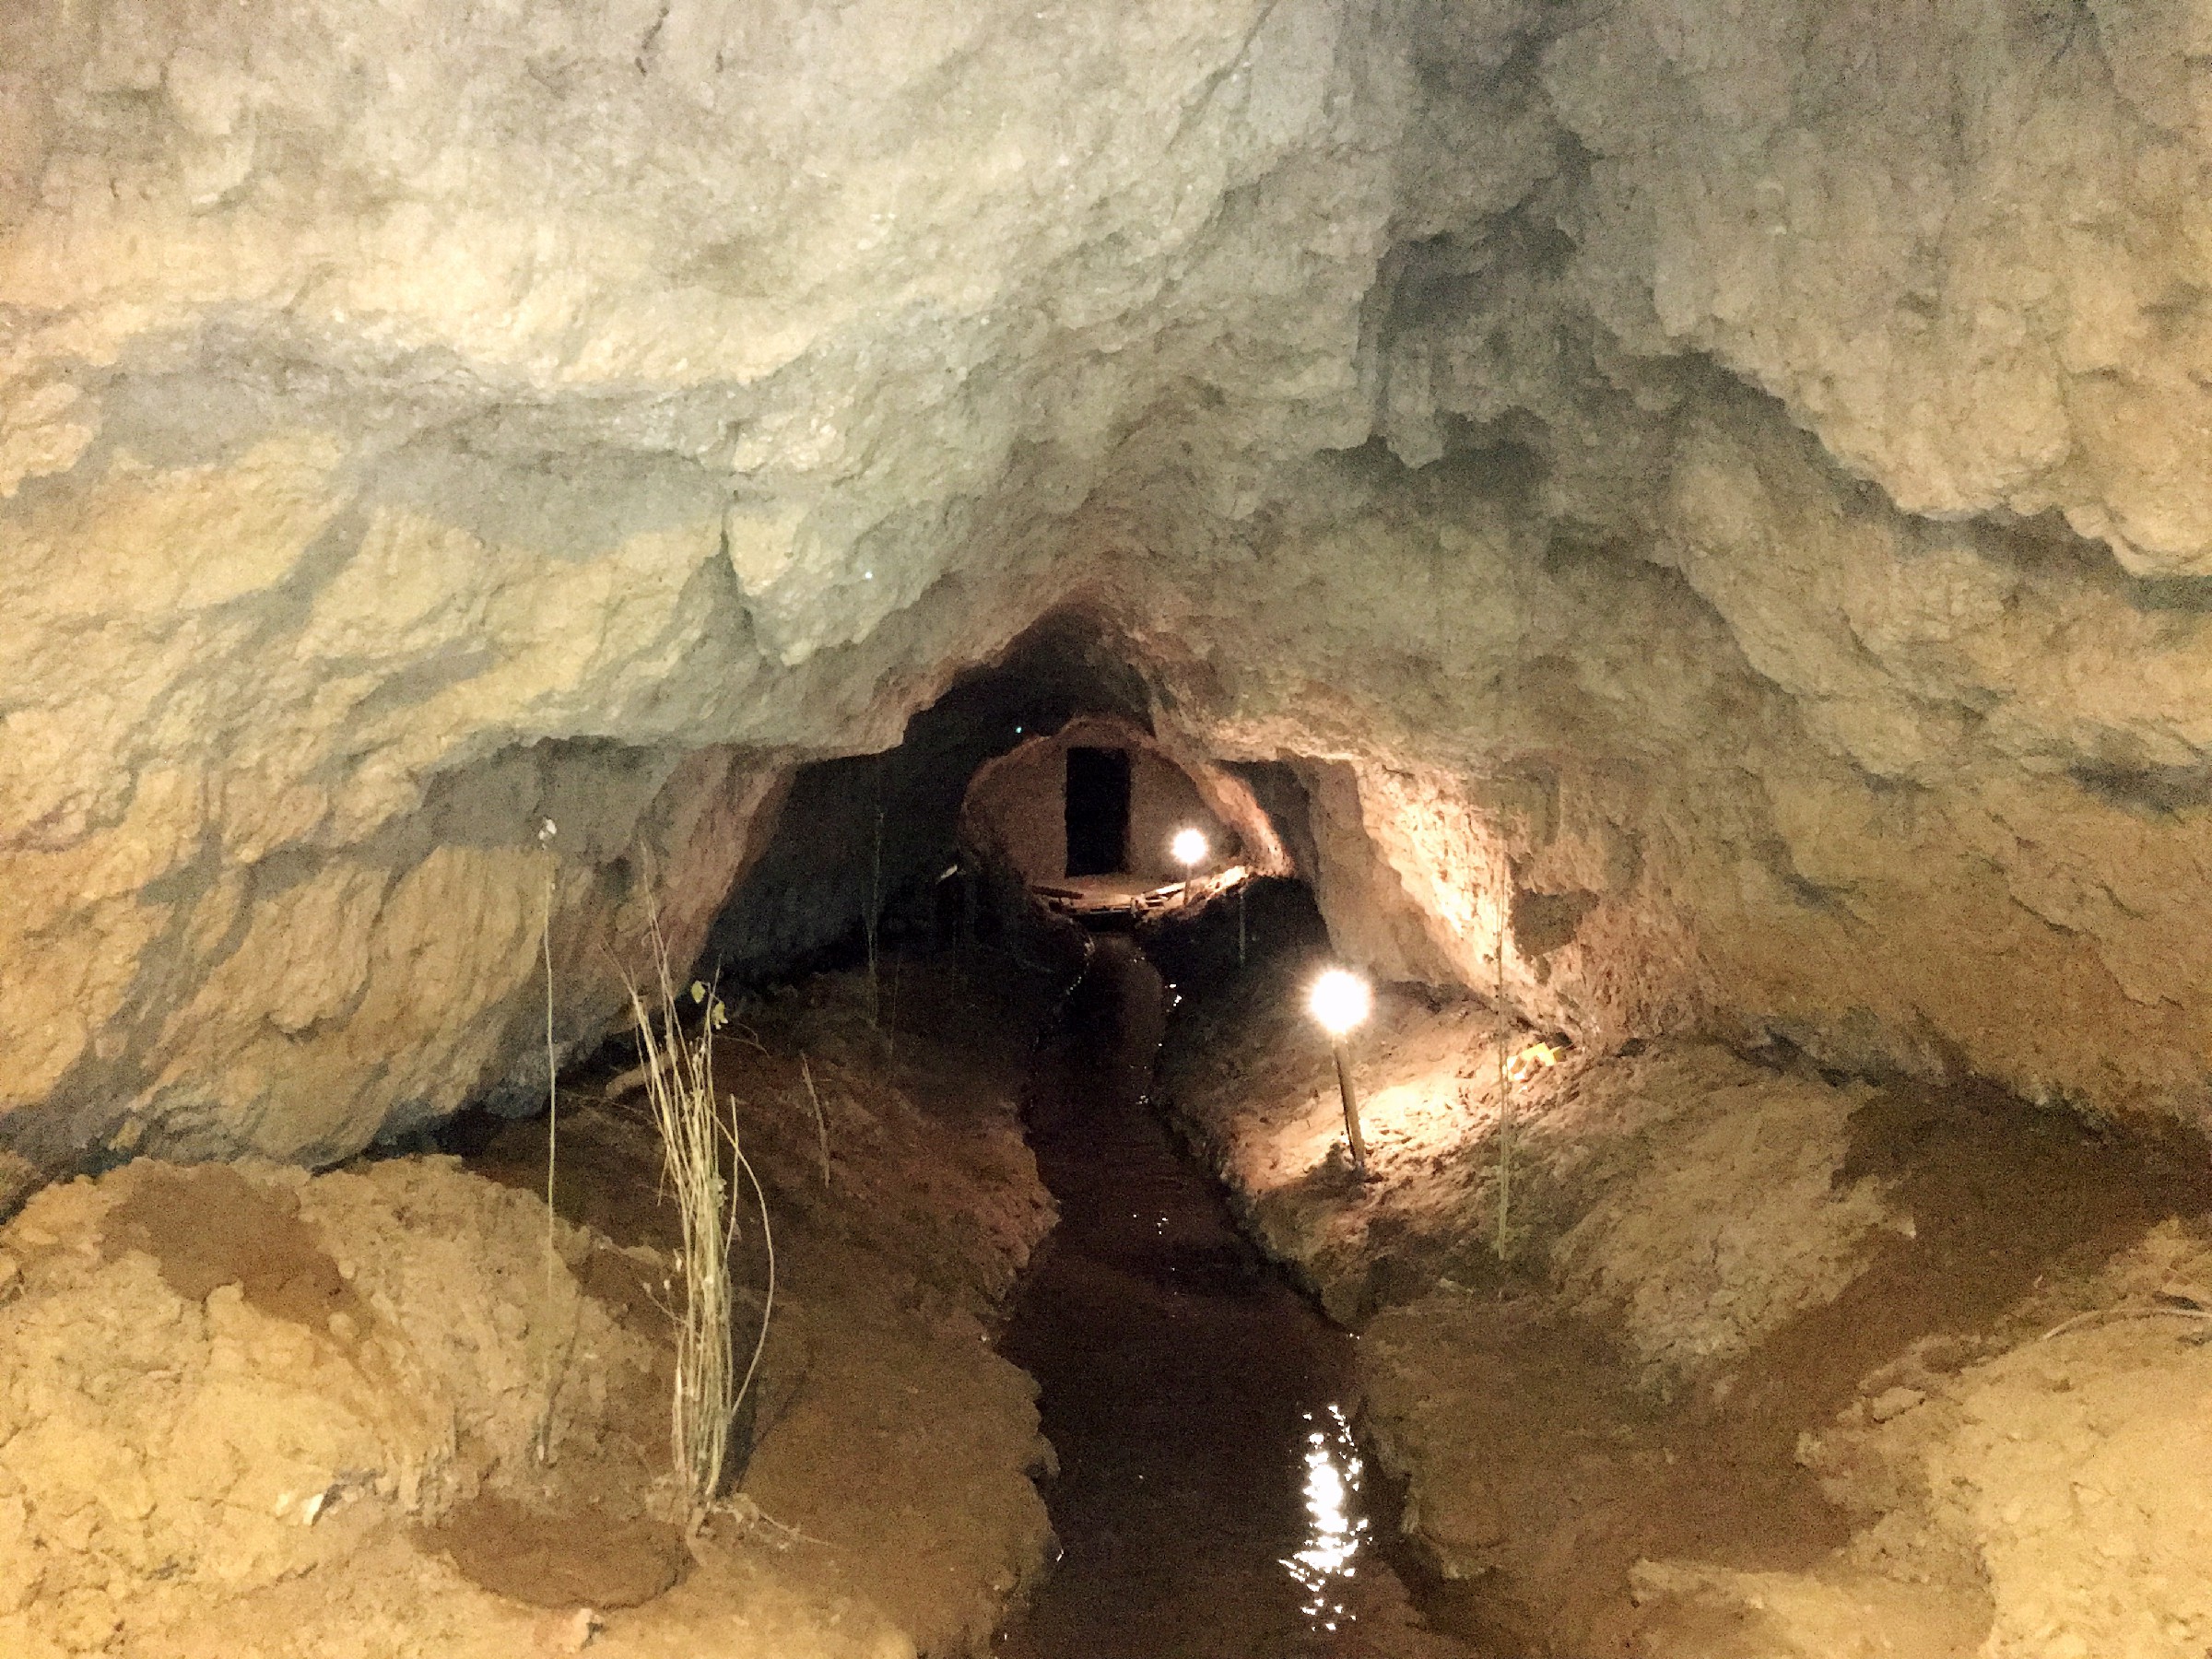 Karez Underground Irrigation System 